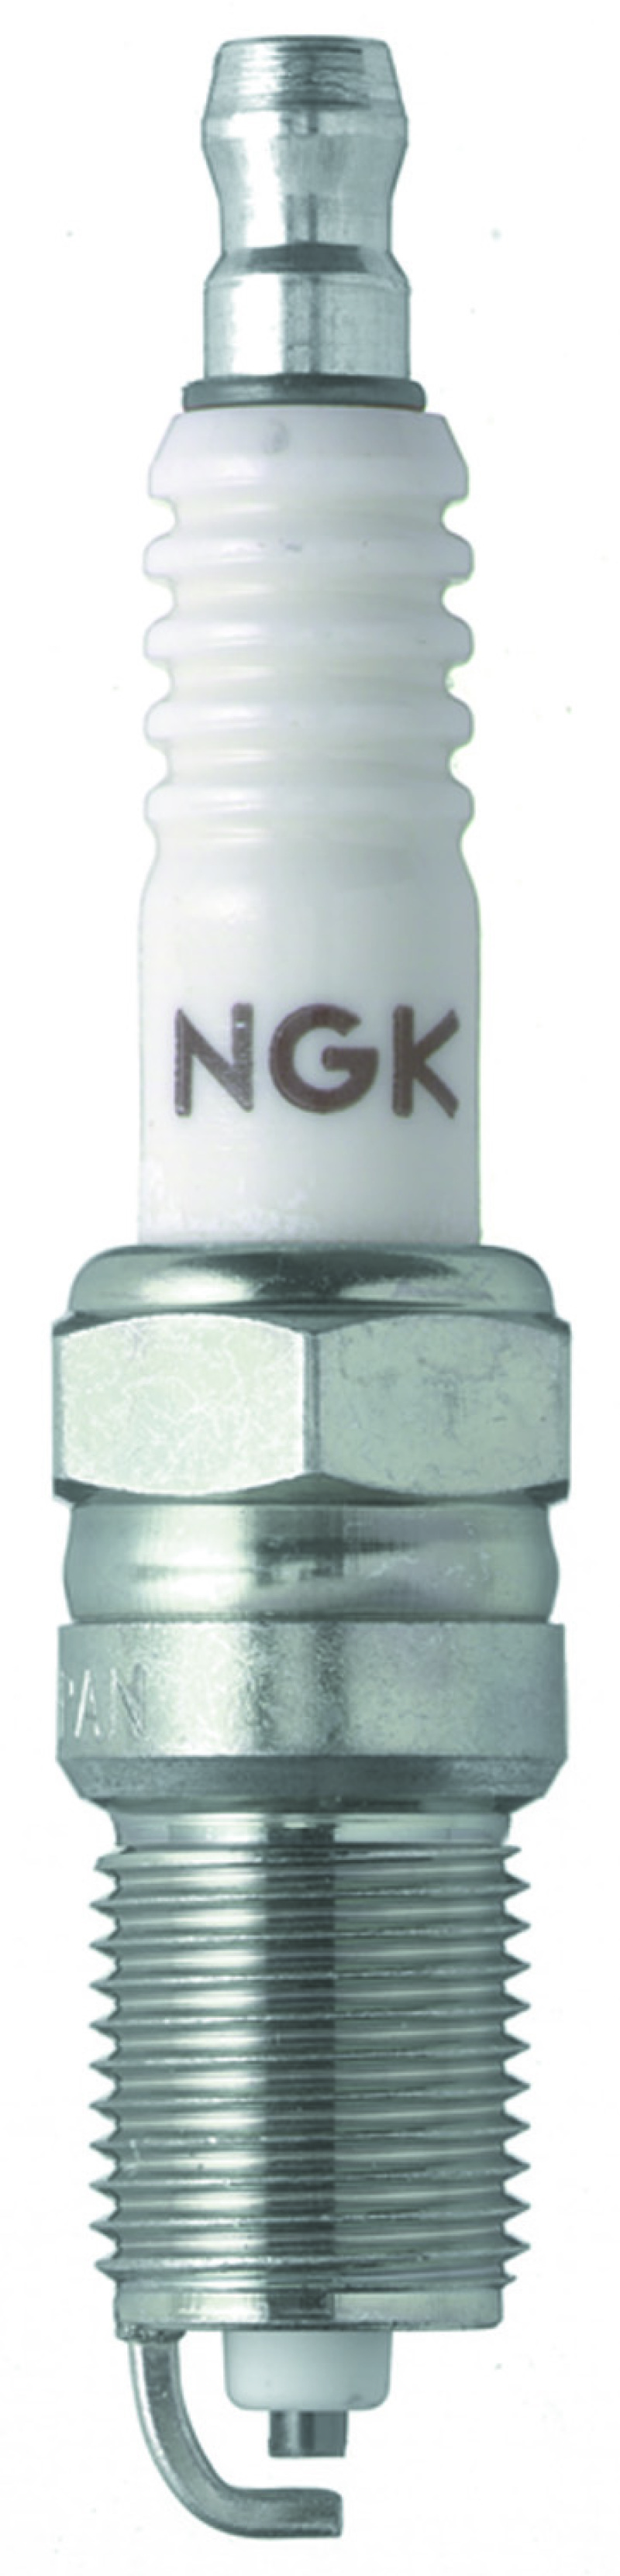 NGK Nickel Spark Plug Box of 4 (R5724-10) - 7993